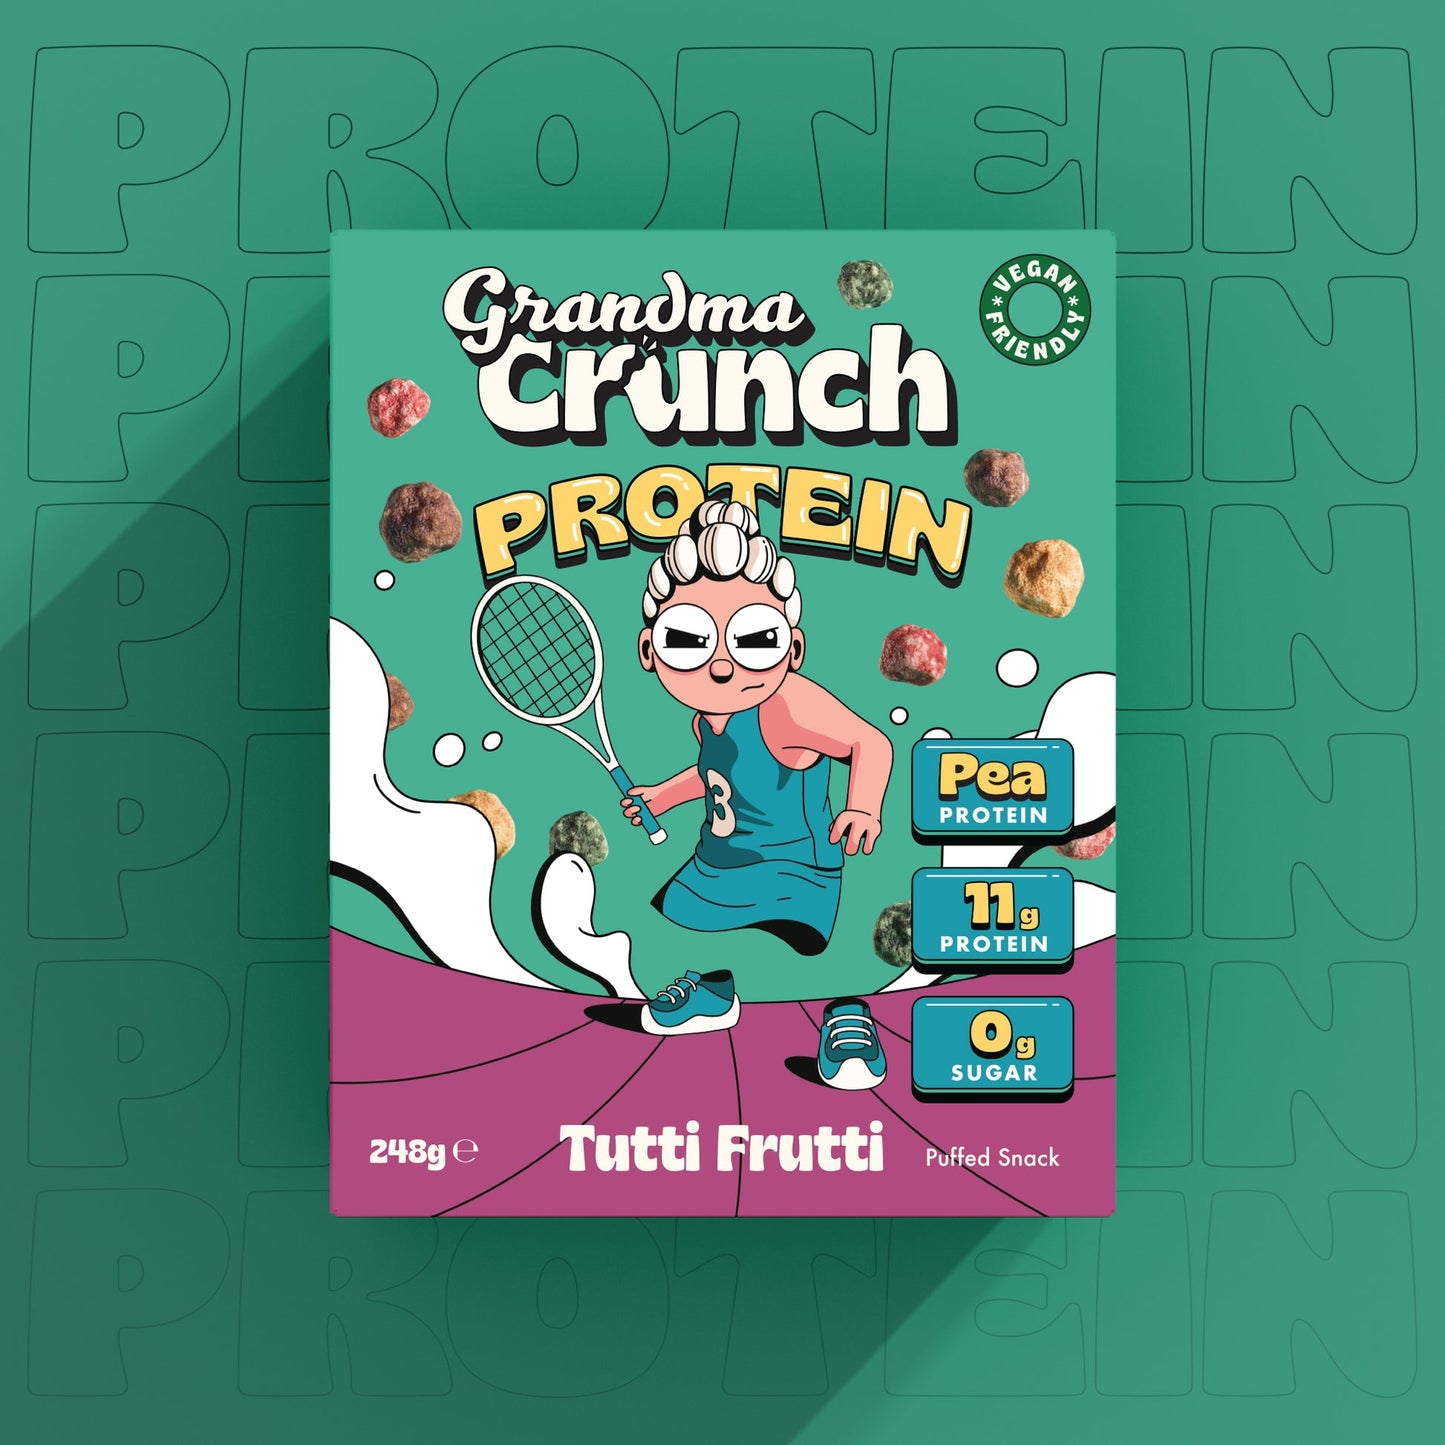 Grandma Crunch Protein - Tutti Frutti flavor